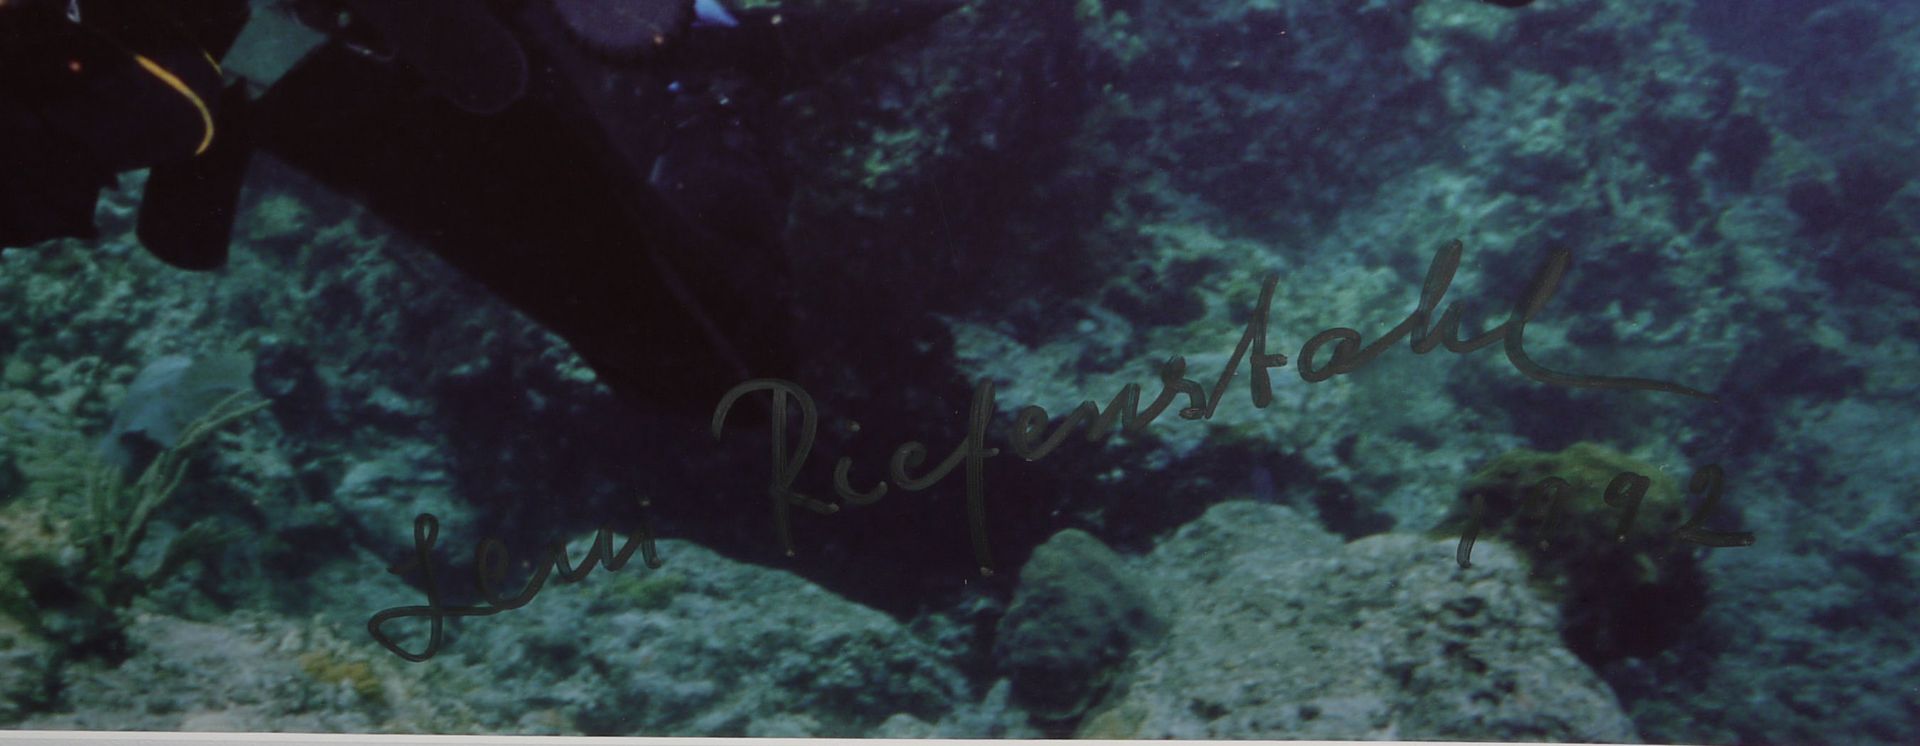 Leni Riefenstahl, Selbstporträt aus "Impressionen unter Wasser", große Farbfotografie signiert u.da - Bild 2 aus 2